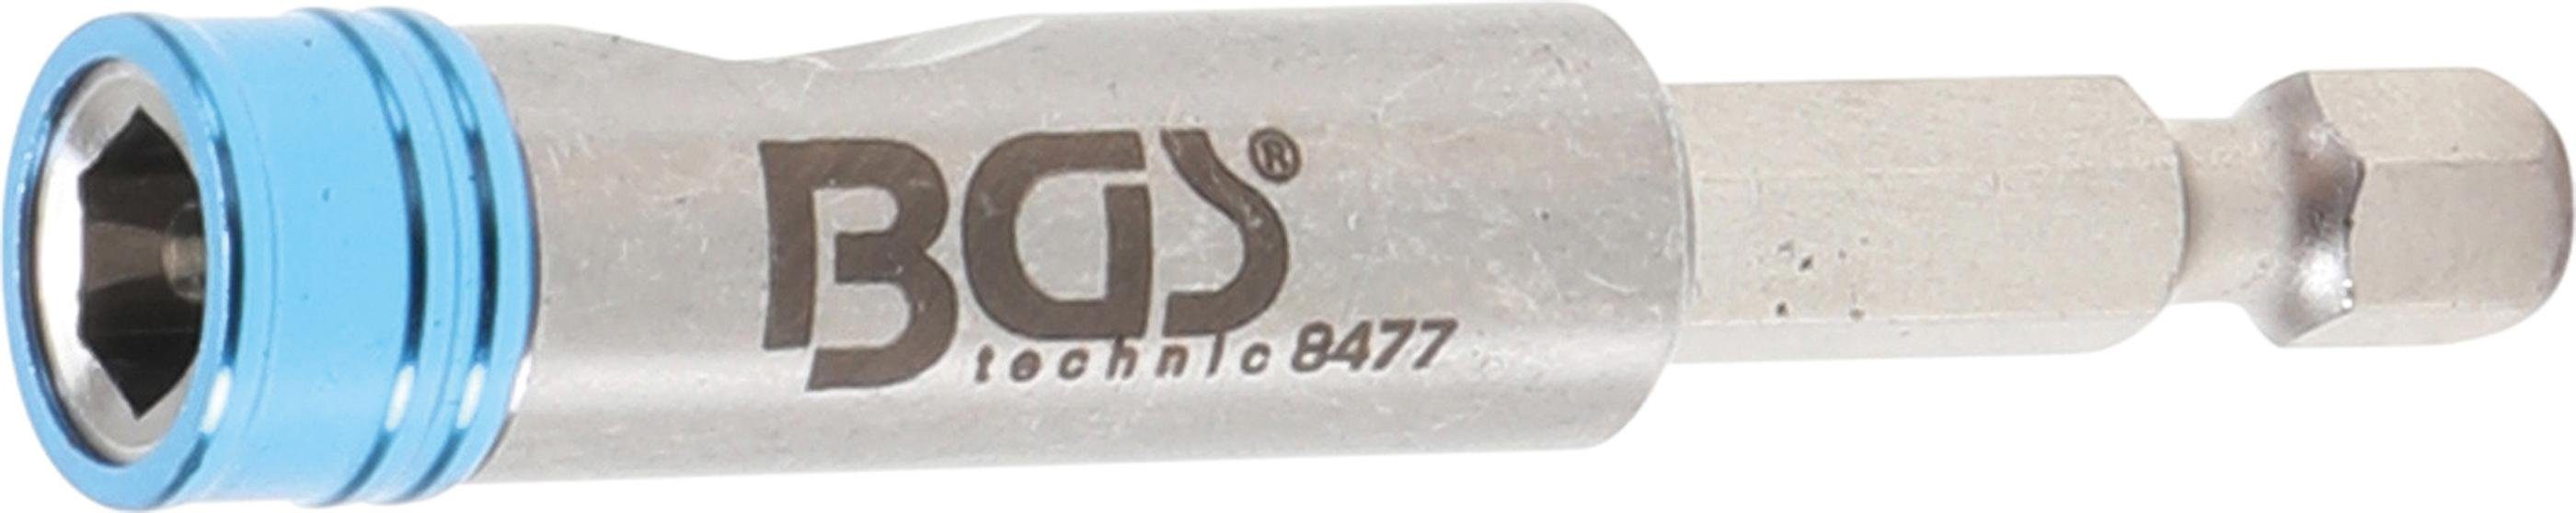 BGS technic Ratschenringschlüssel Bithalter mit Schnellwechsler, 6,3 mm (1/4)